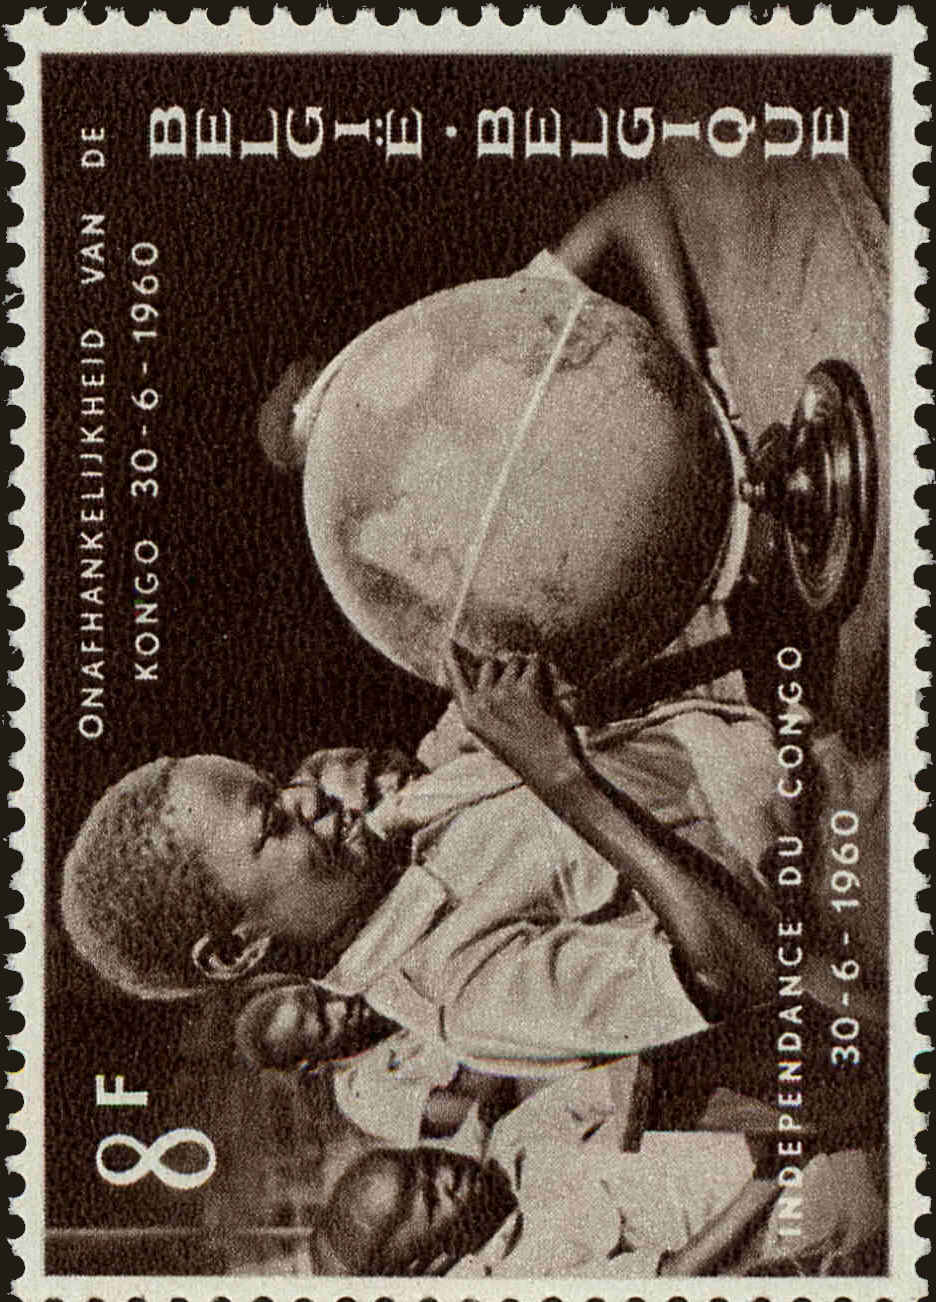 Front view of Belgium 552 collectors stamp